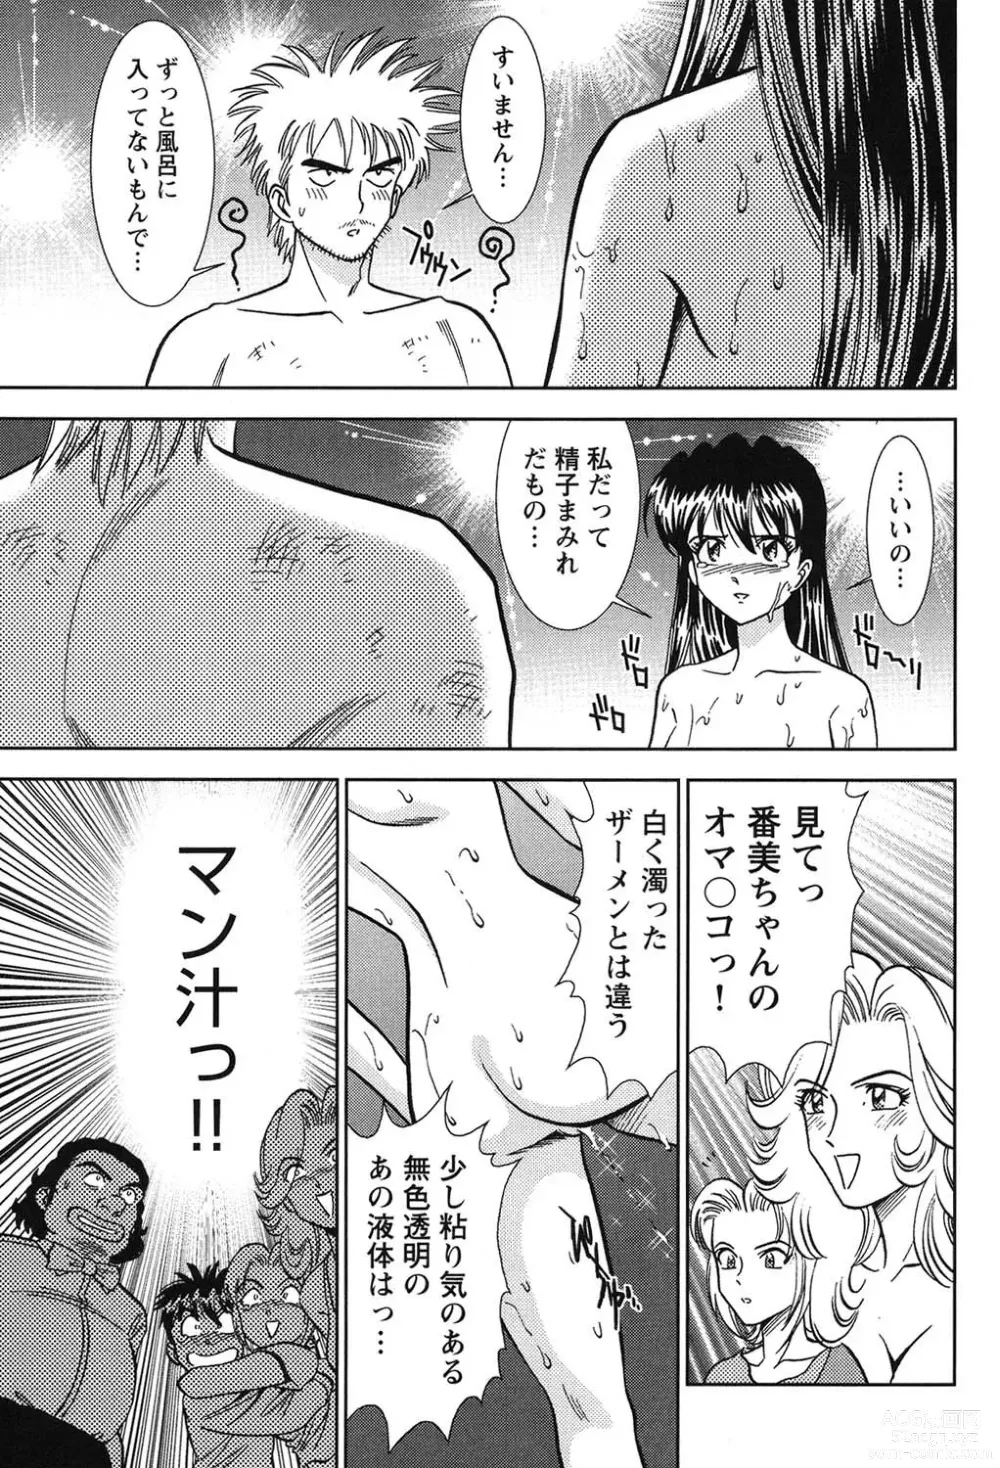 Page 226 of manga Bambina Oiroke  Battle  Hen